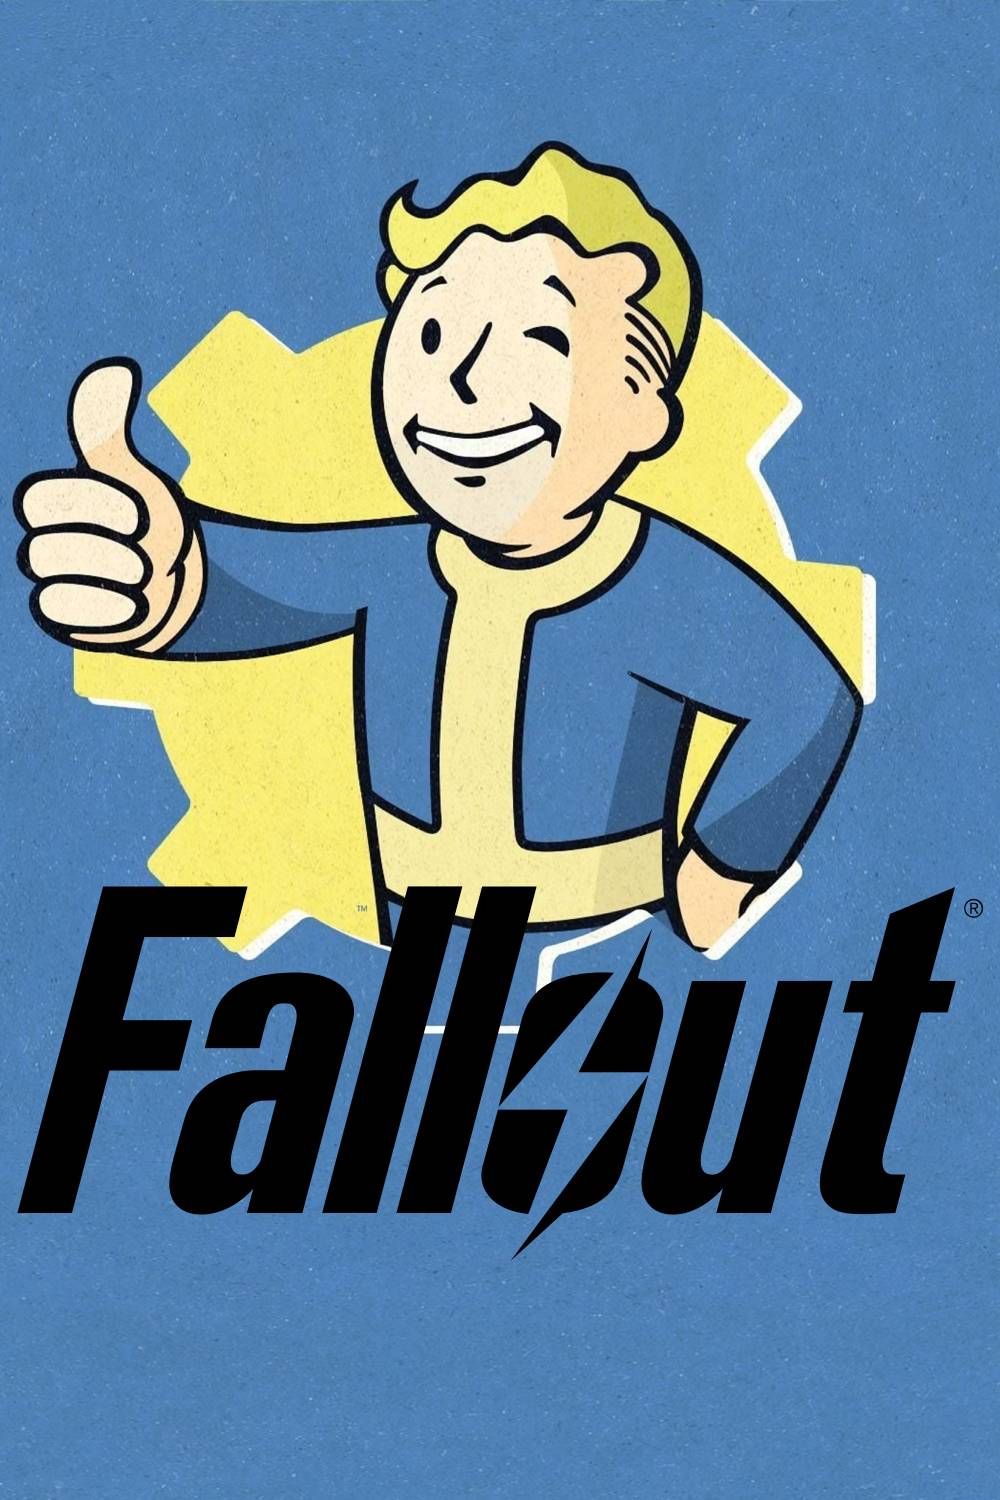 Portada de la franquicia Fallout